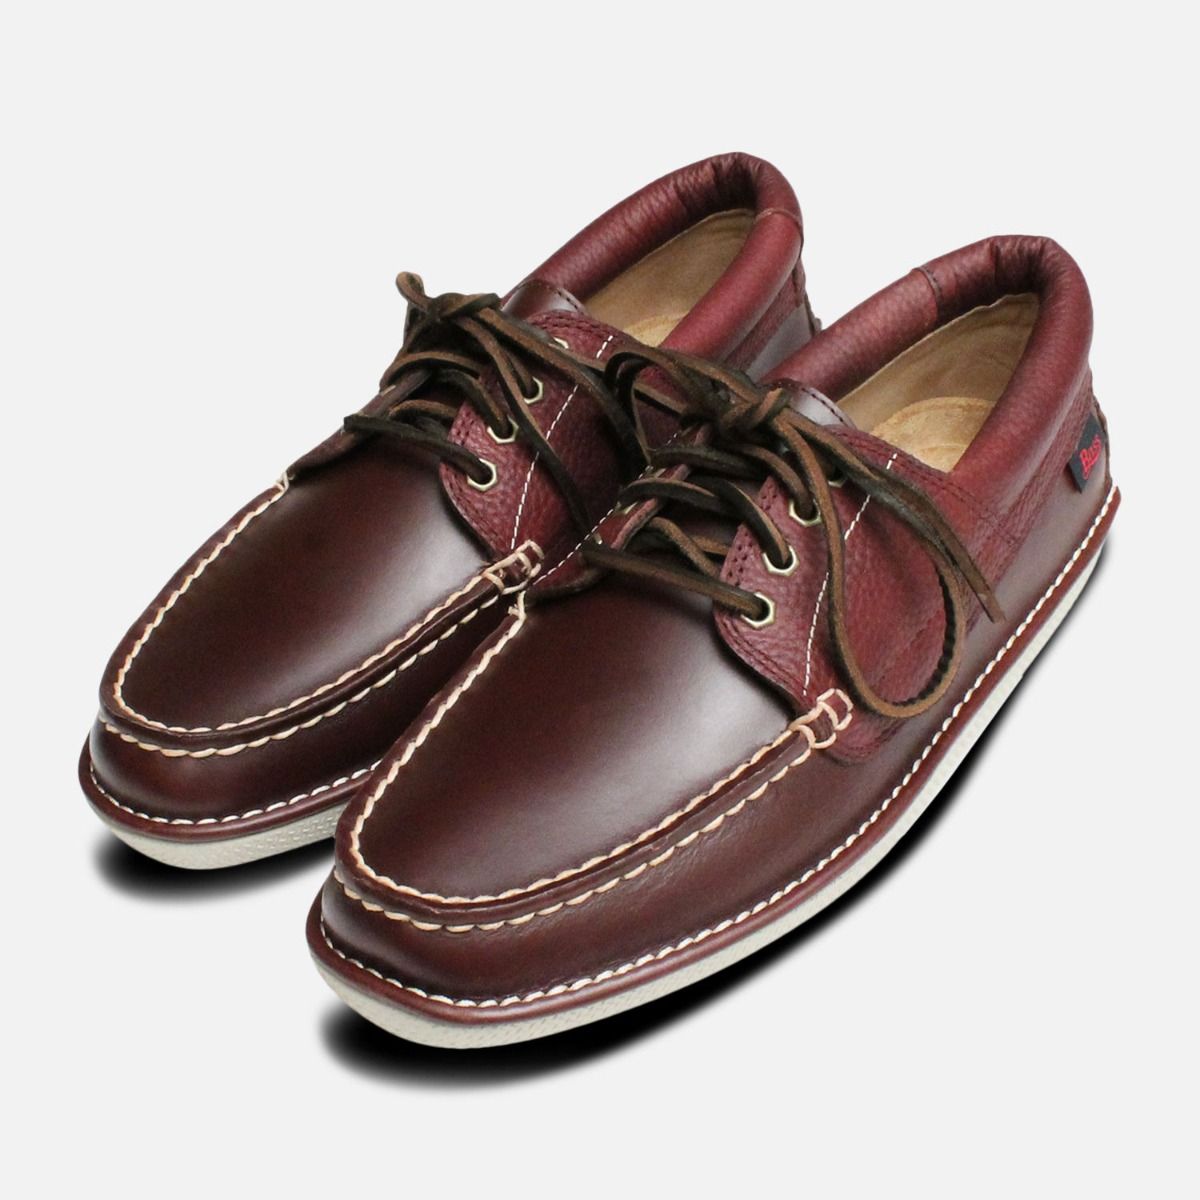 boat shoes men